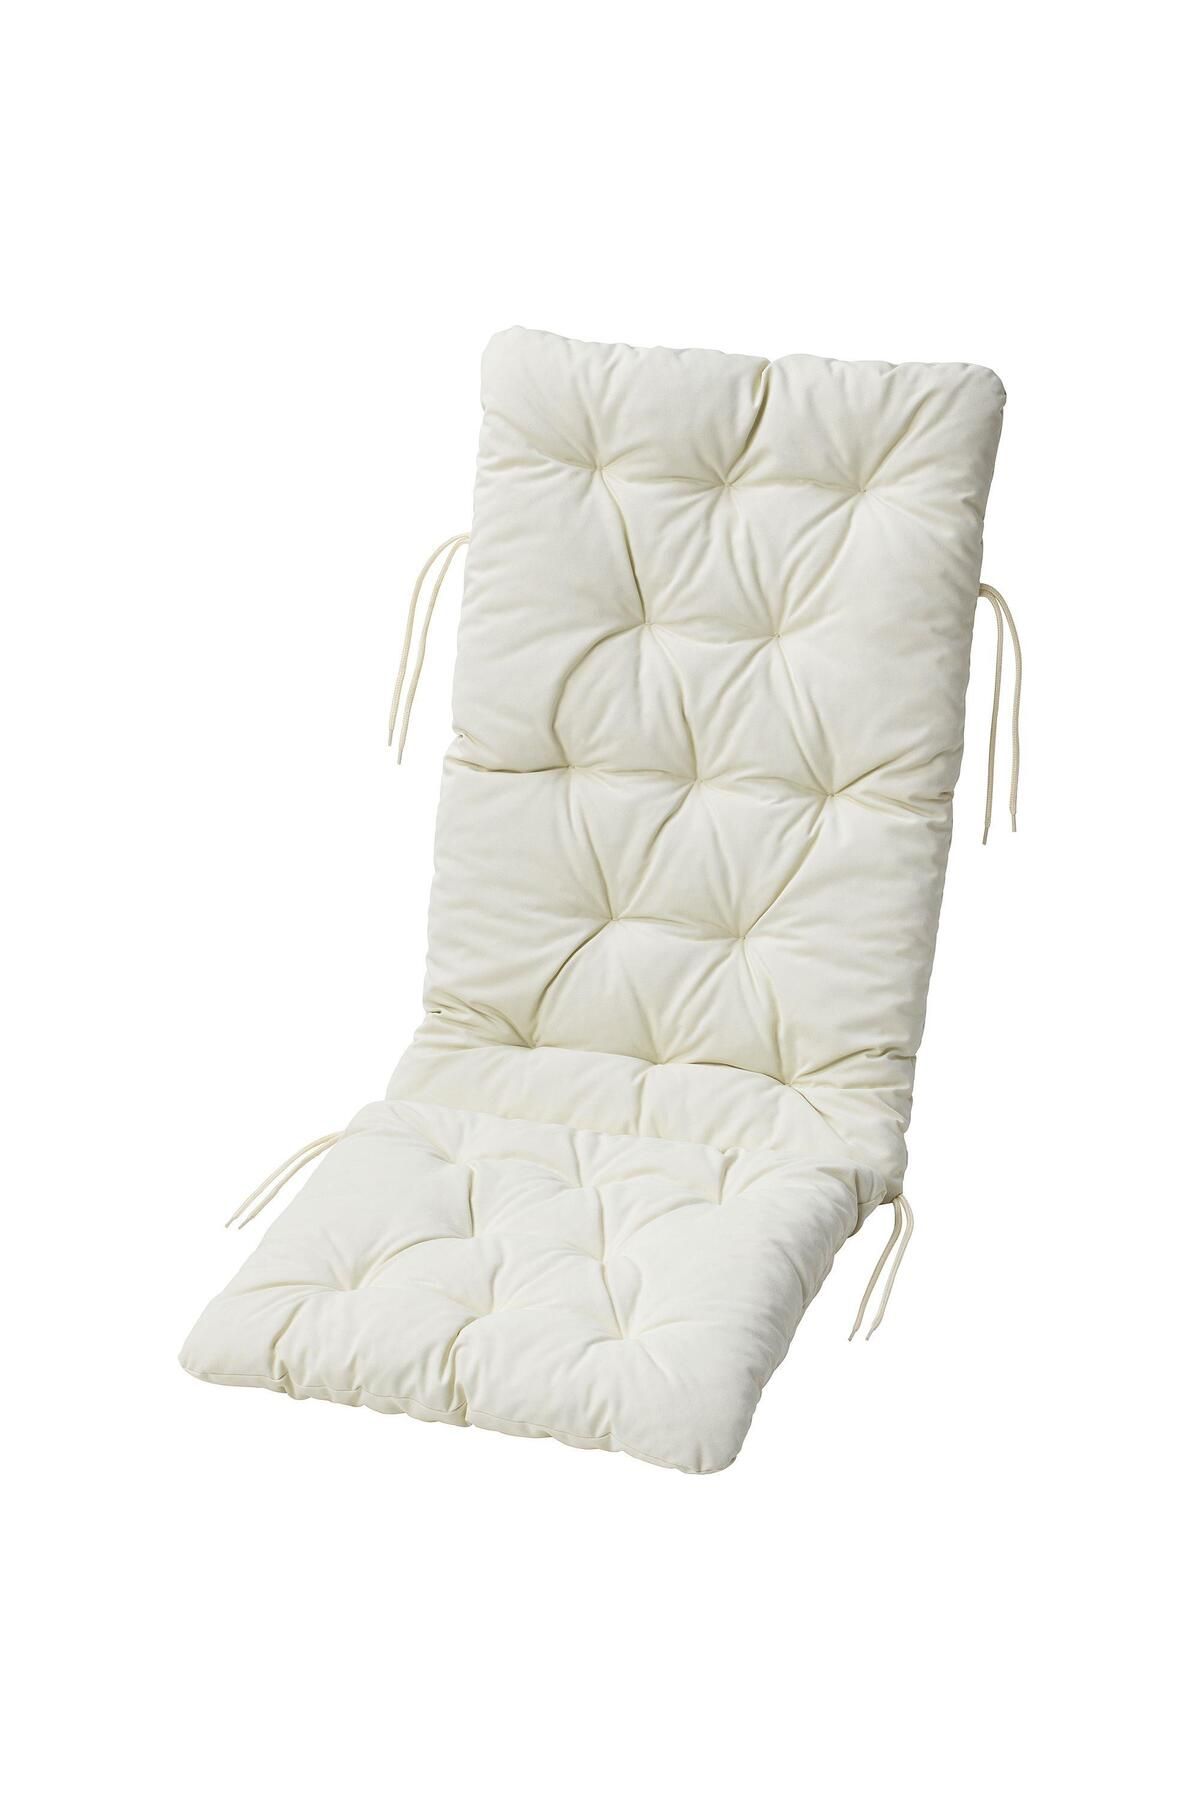 IKEA Sandalye Minderi, Bej Renk MeridyenDukkan 116x45 cm Bağcıklı Minder